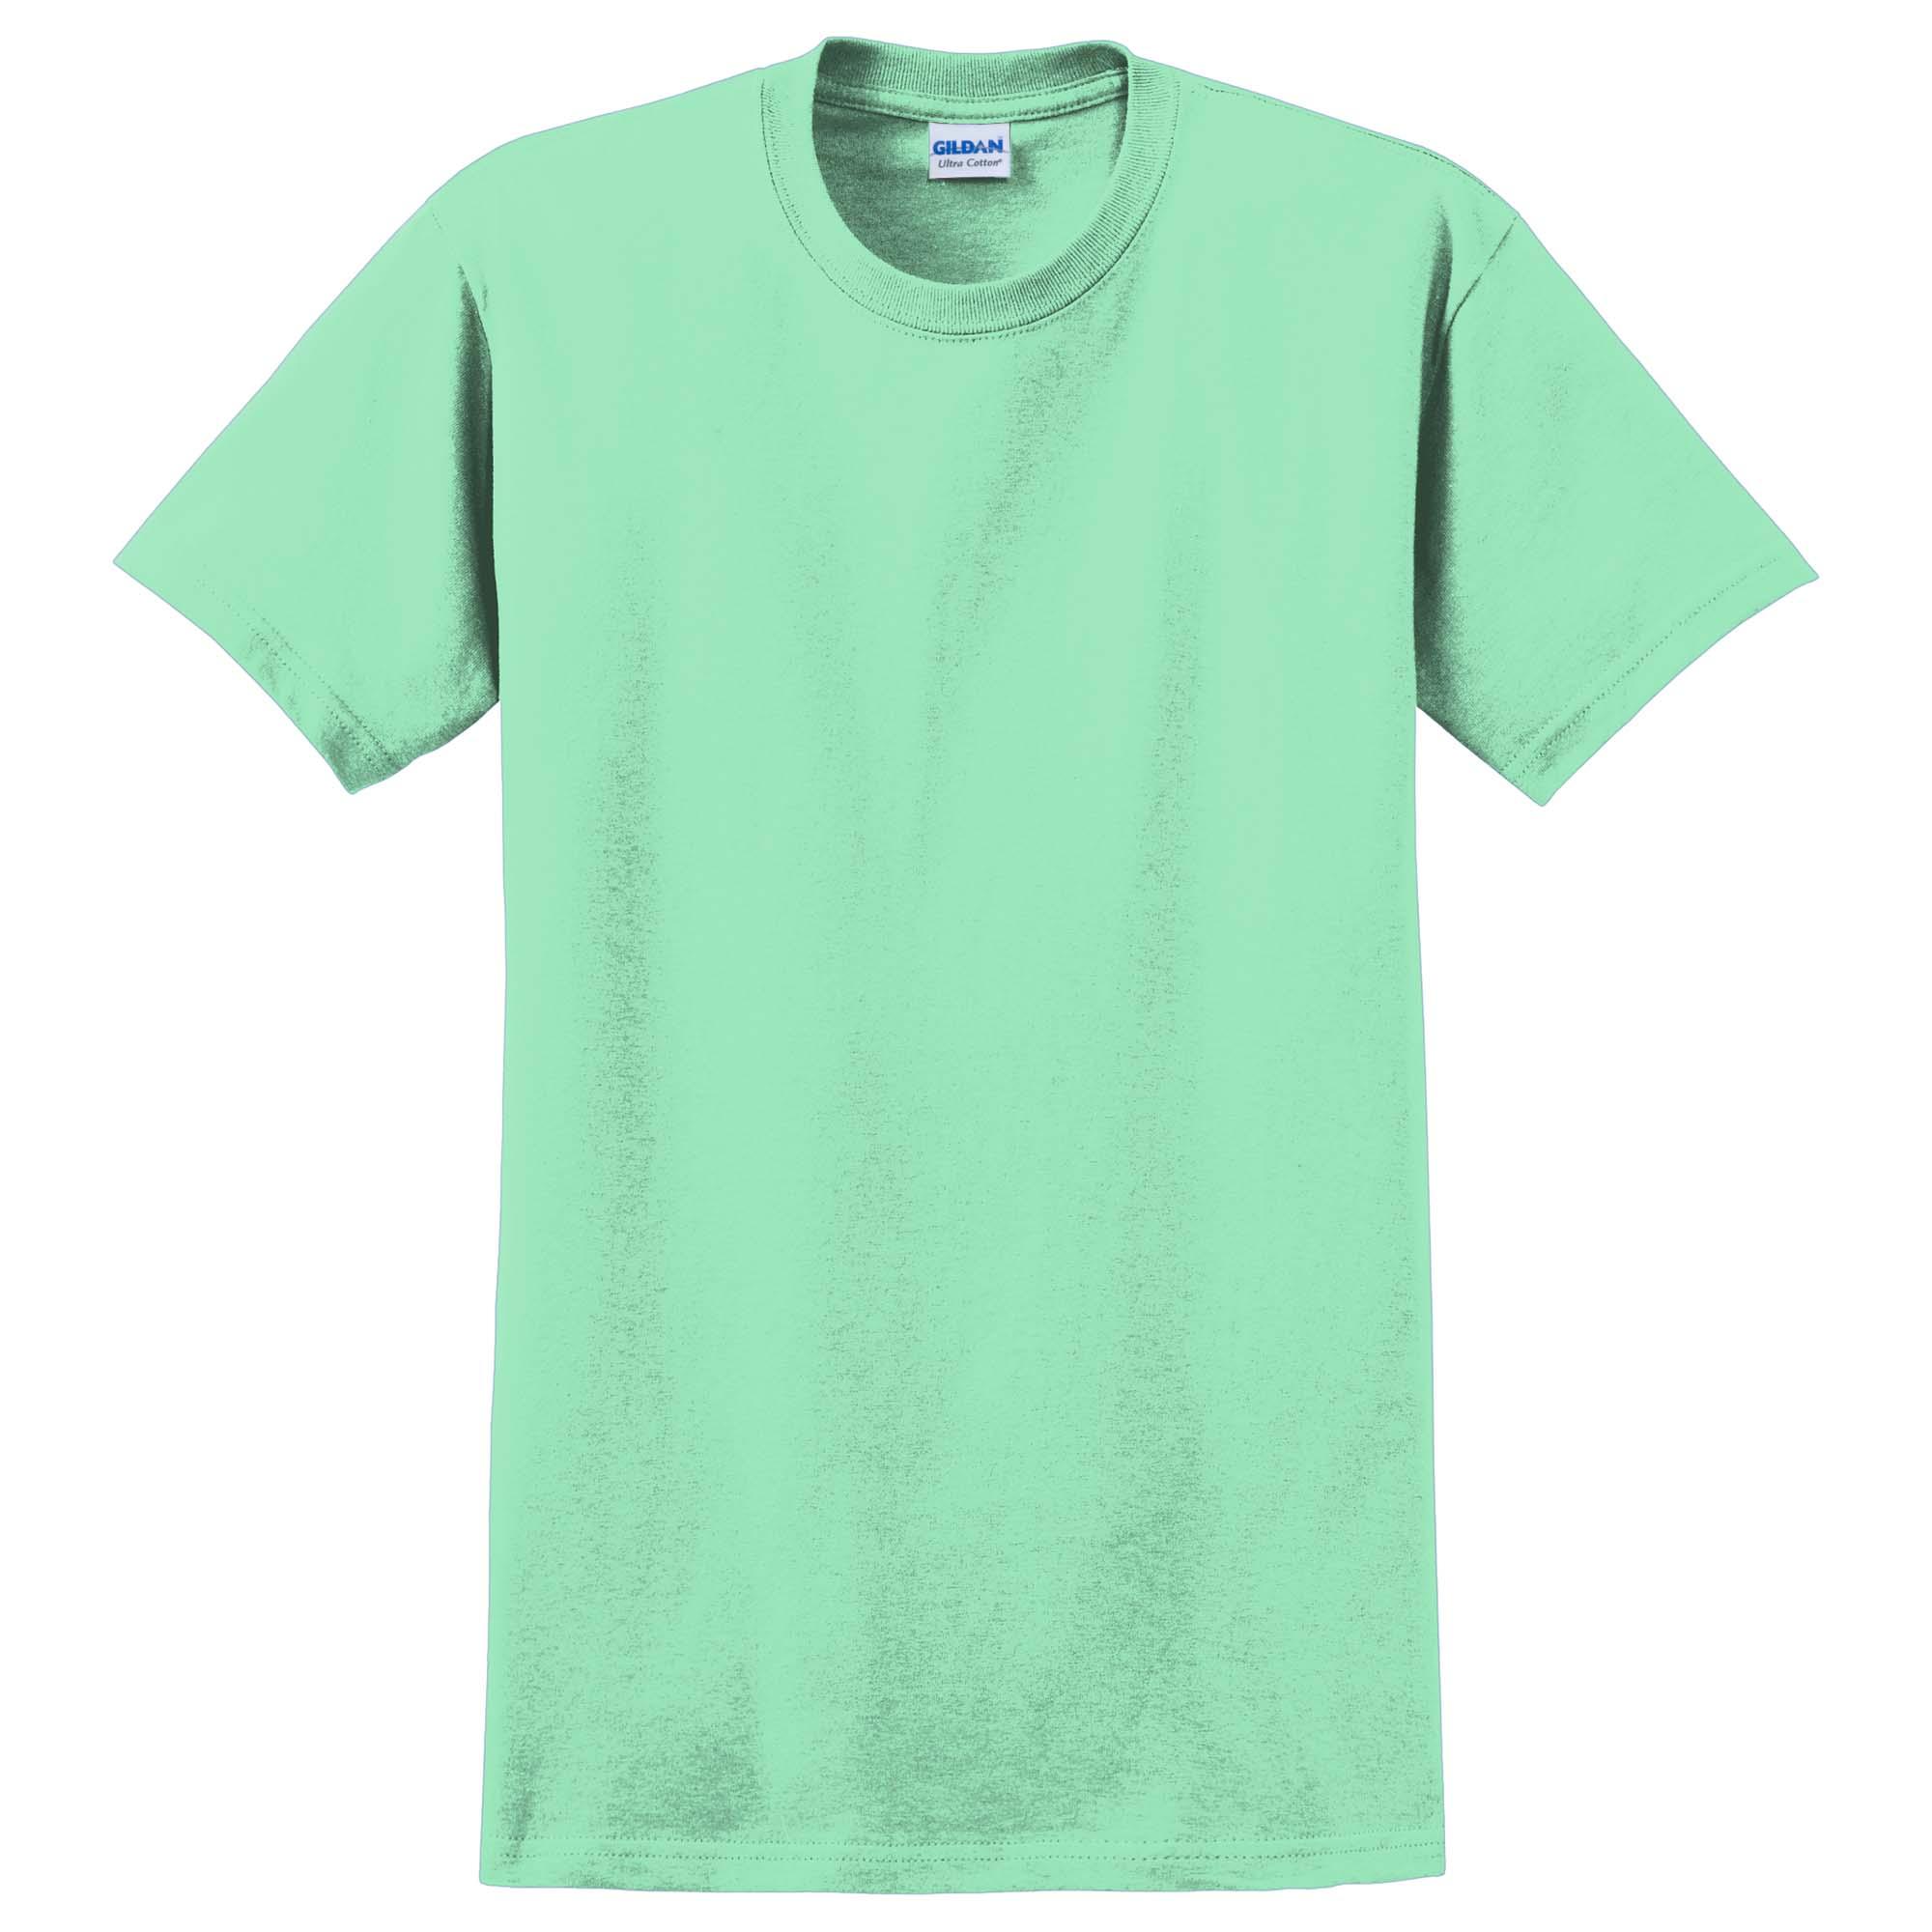 Gildan 2000 Ultra Cotton 100% US Cotton T-Shirt - Mint Green | Full Source